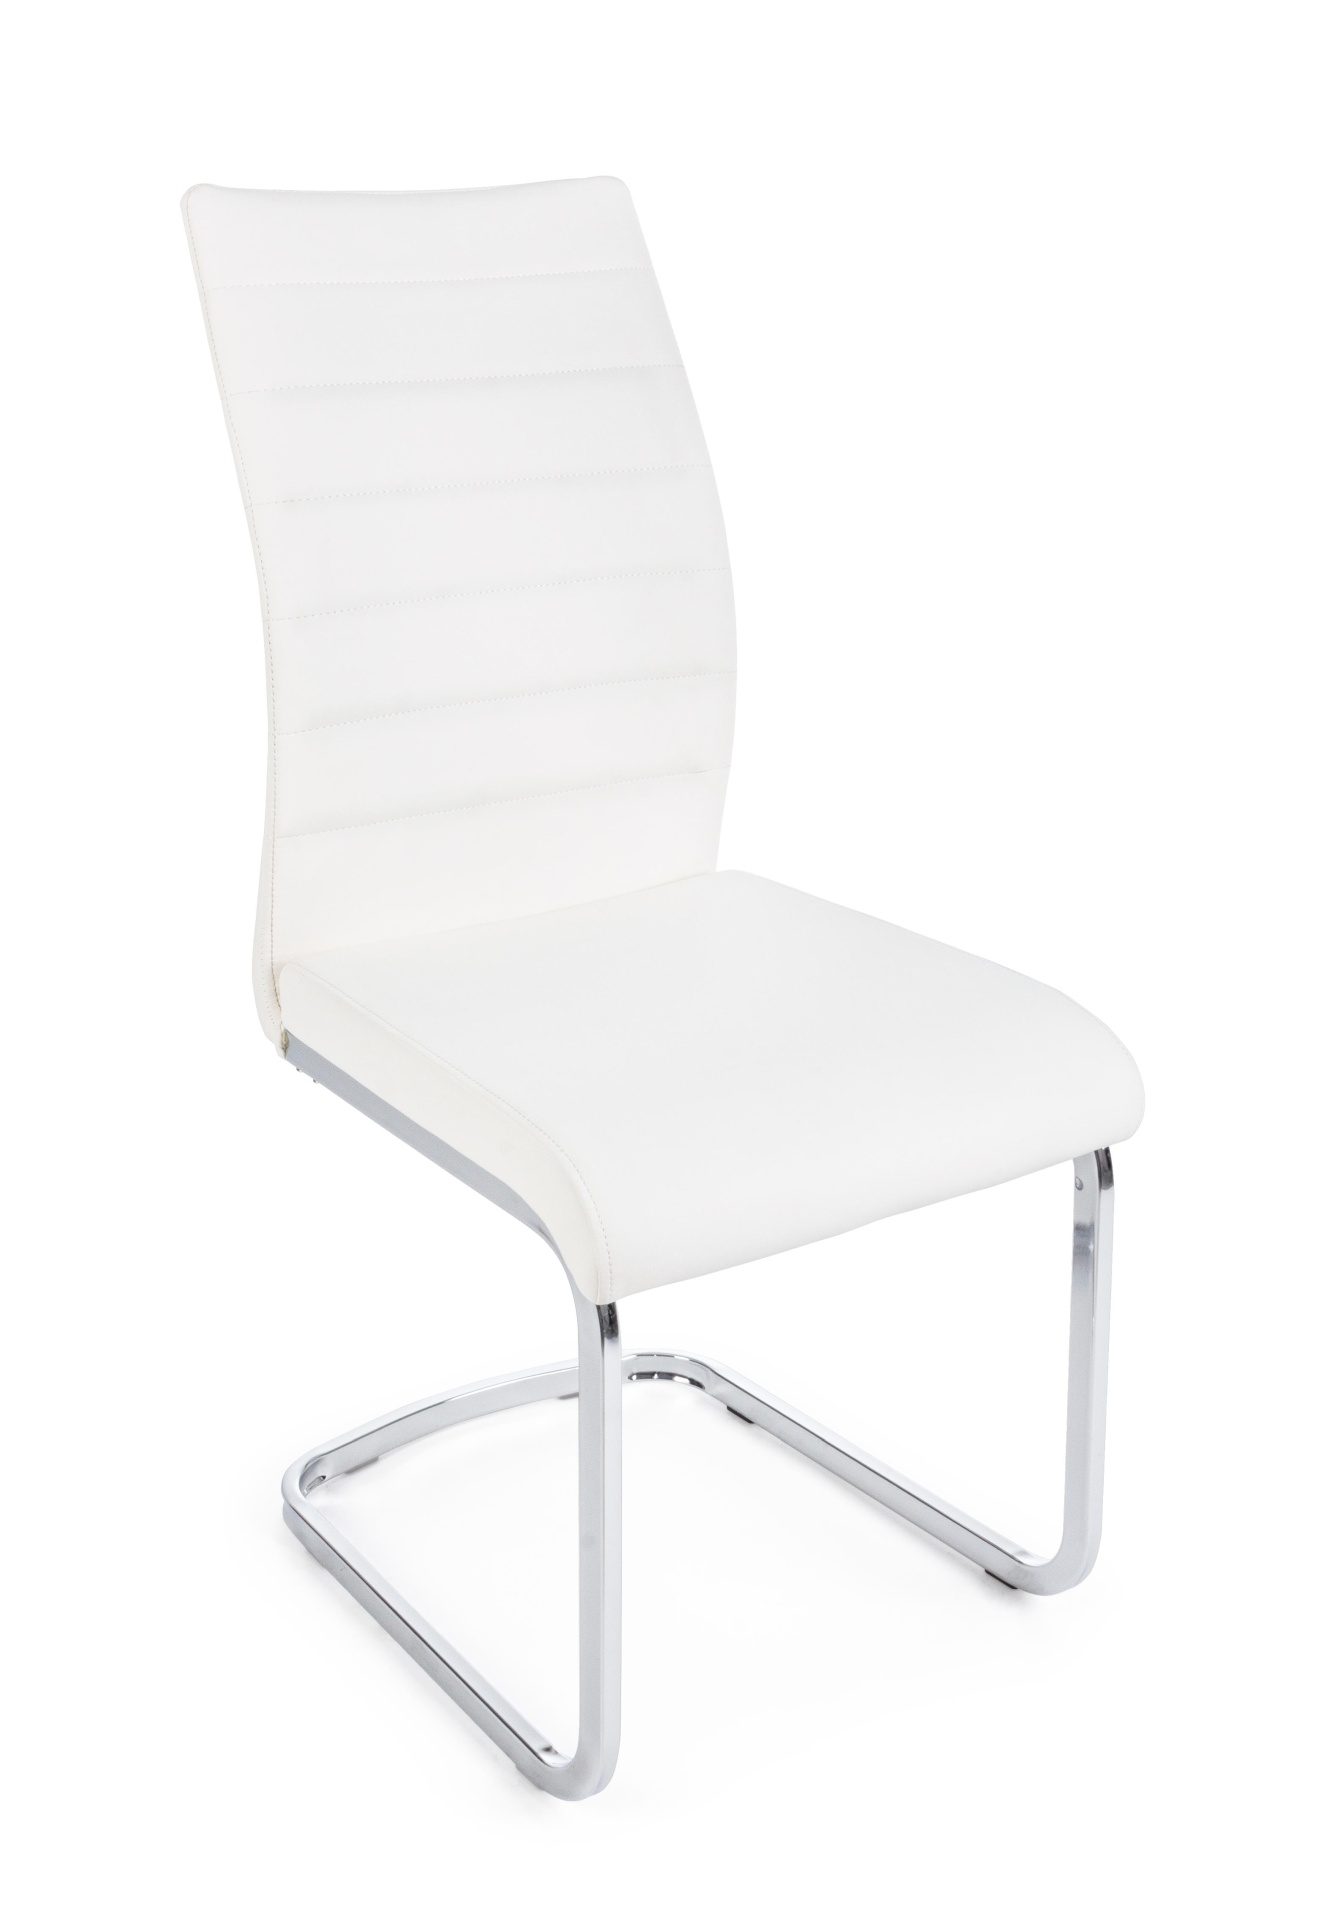 Der Stuhl Mayra überzeugt mit seinem modernem Design. Gefertigt wurde der Stuhl aus einem Kunststoff-Bezug, welcher einen weißen Farbton besitzt. Das Gestell ist aus Metall, welches eine Silberne Farbe hat. Die Sitzhöhe beträgt 47 cm.